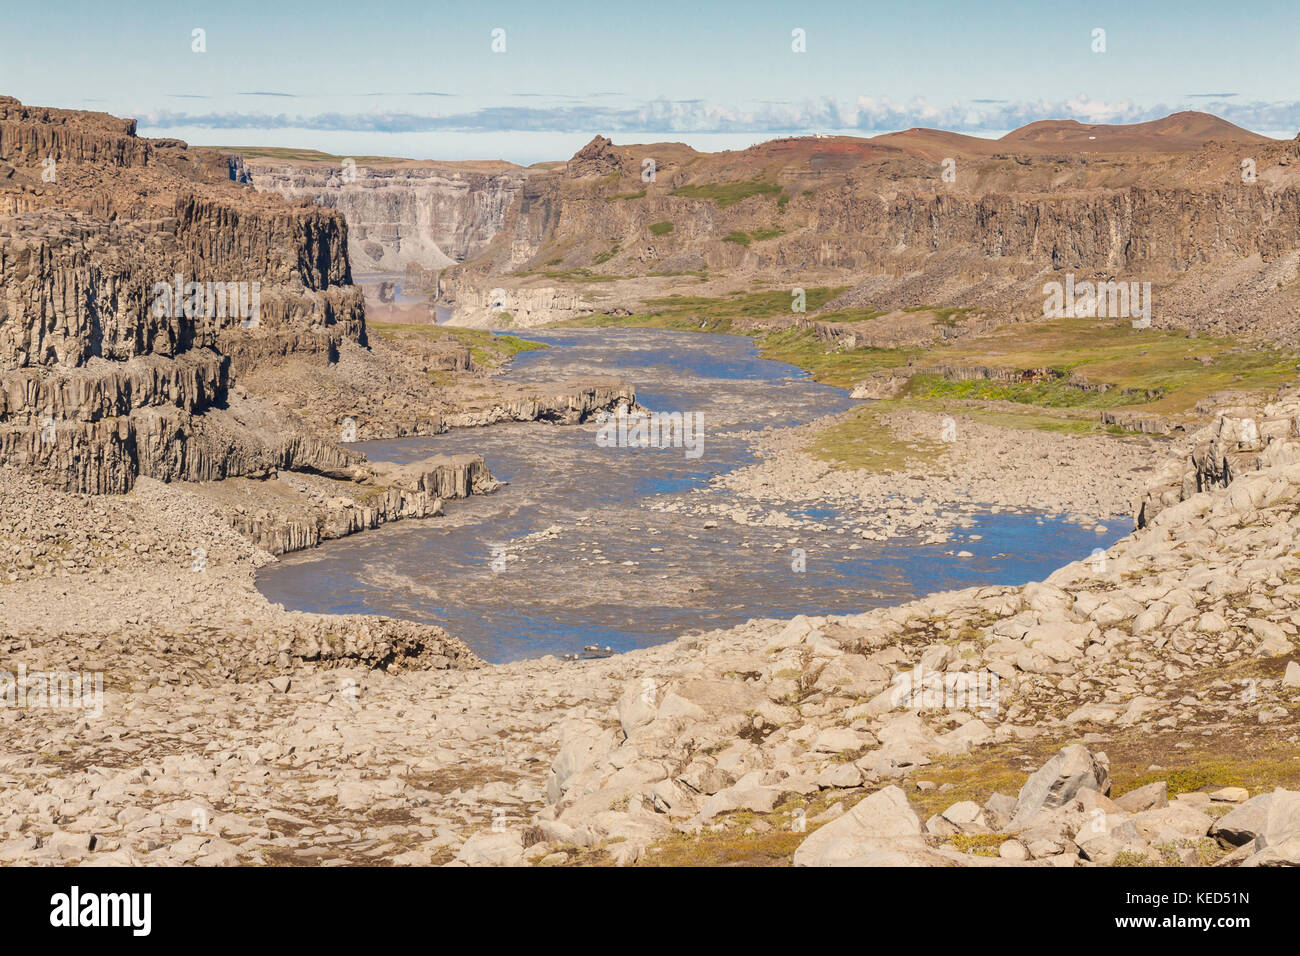 Jokulsa a fjollum canyon. è il secondo fiume più lungo dell'Islanda. Esso correnti sopra le cascate di Selfoss e dettifoss. Foto Stock